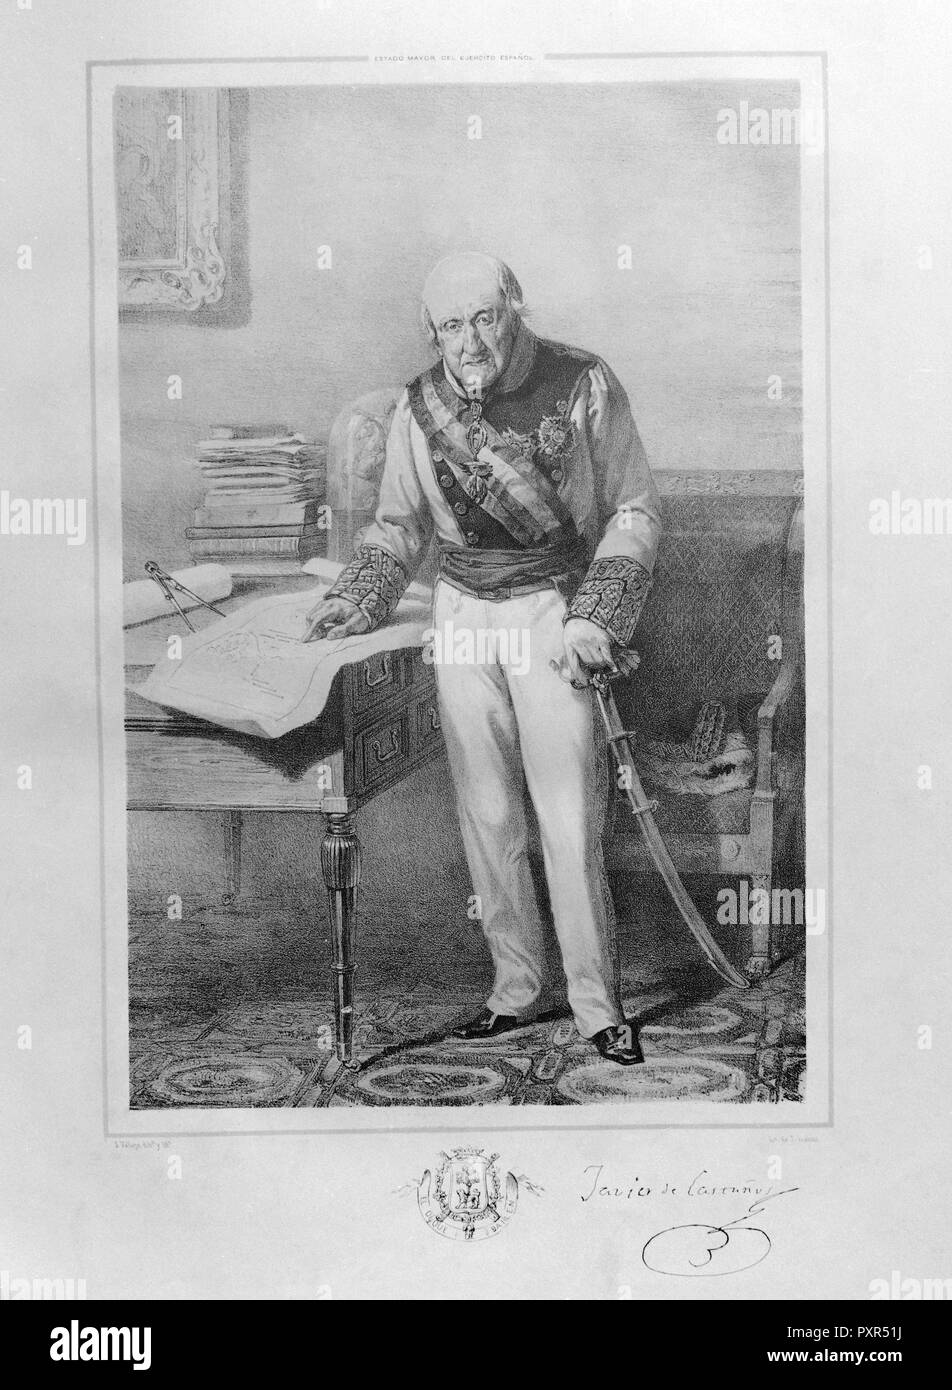 FRANCISCO JAVIER CASTAÑOS - 1756/1852 - MILITAR Y POLITICO ESPAÑOL. Foto Stock